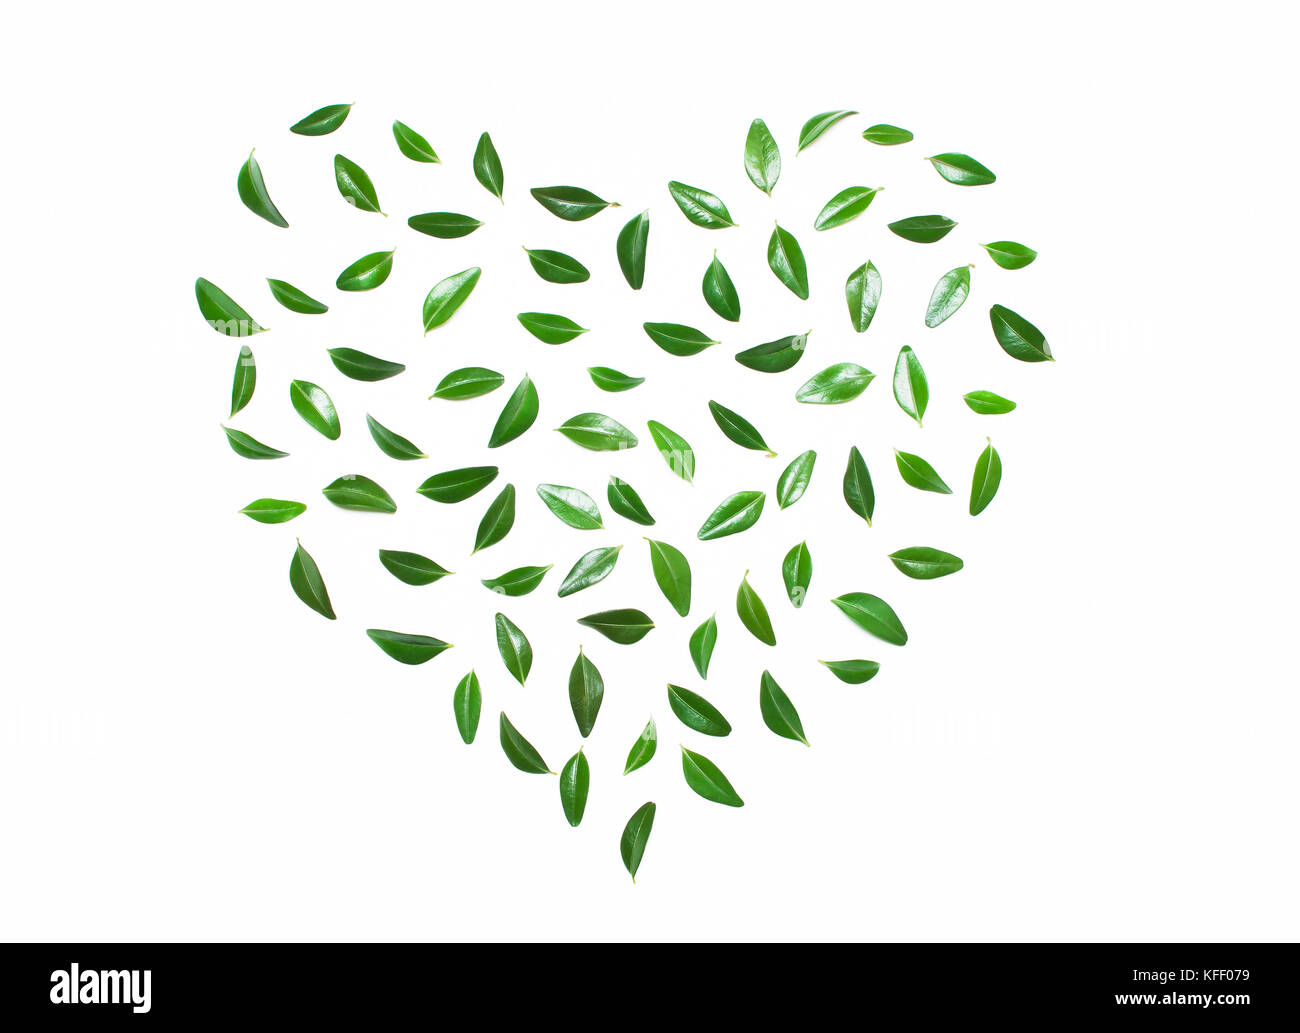 Coeur de feuilles vertes sur fond blanc.concept d'amour, de l'éco. type de télévision Banque D'Images